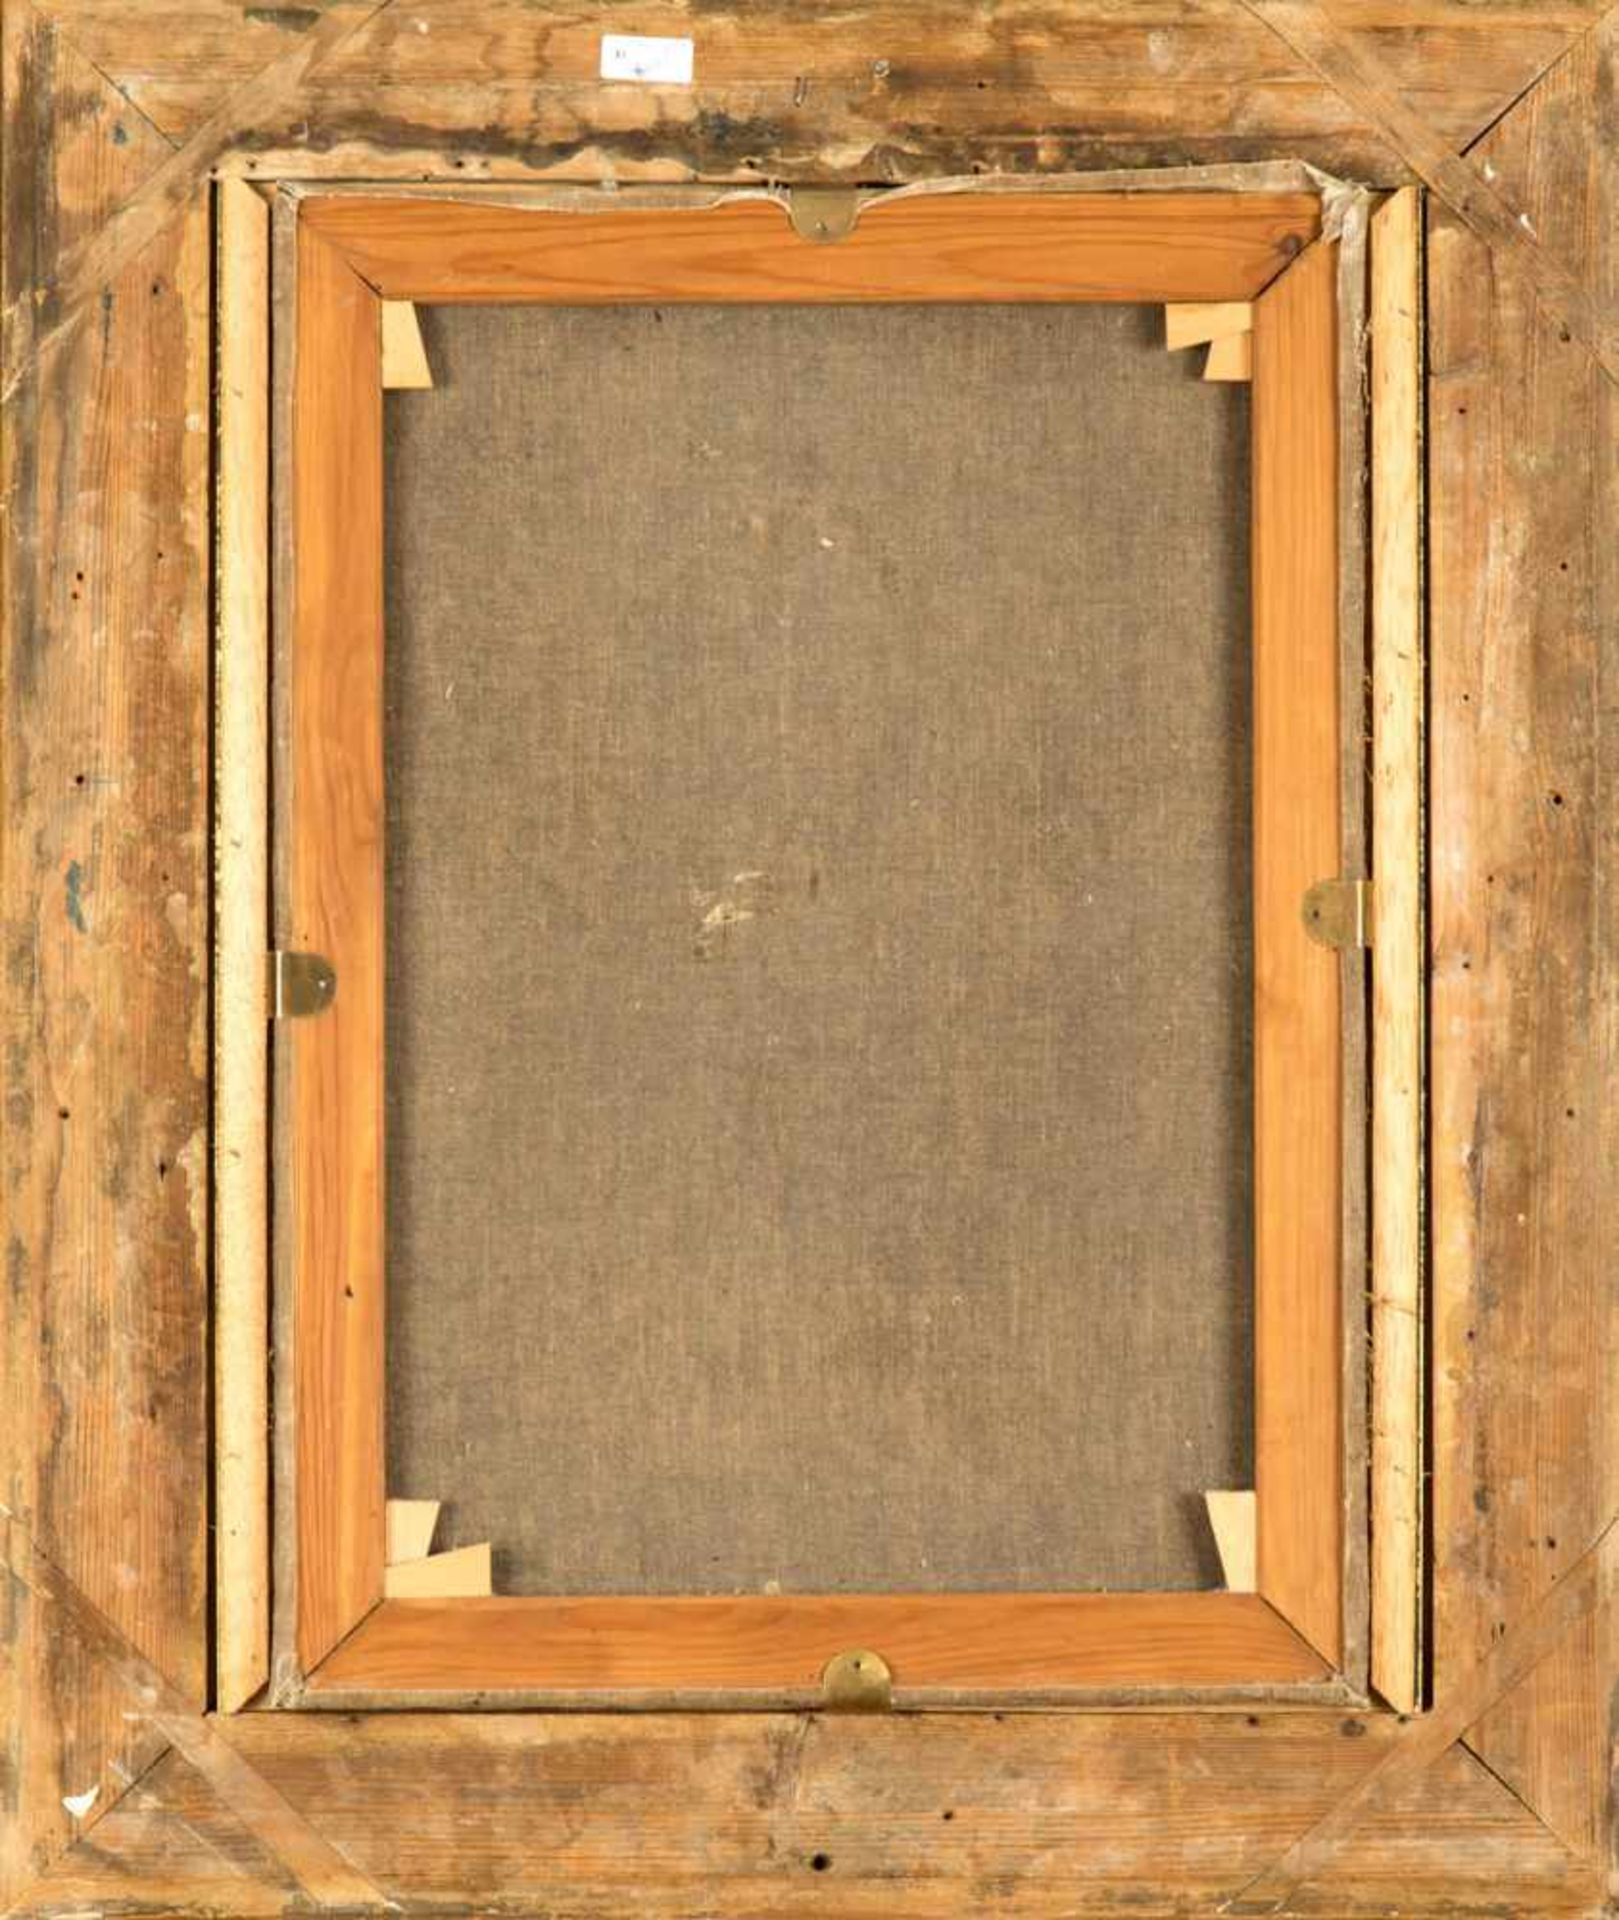 Wohl Italien 18.Jh. Porträt eines Franziskanermönchs.Öl/Leinwand doubliert. 56 x 41 cm. R. - Bild 2 aus 2